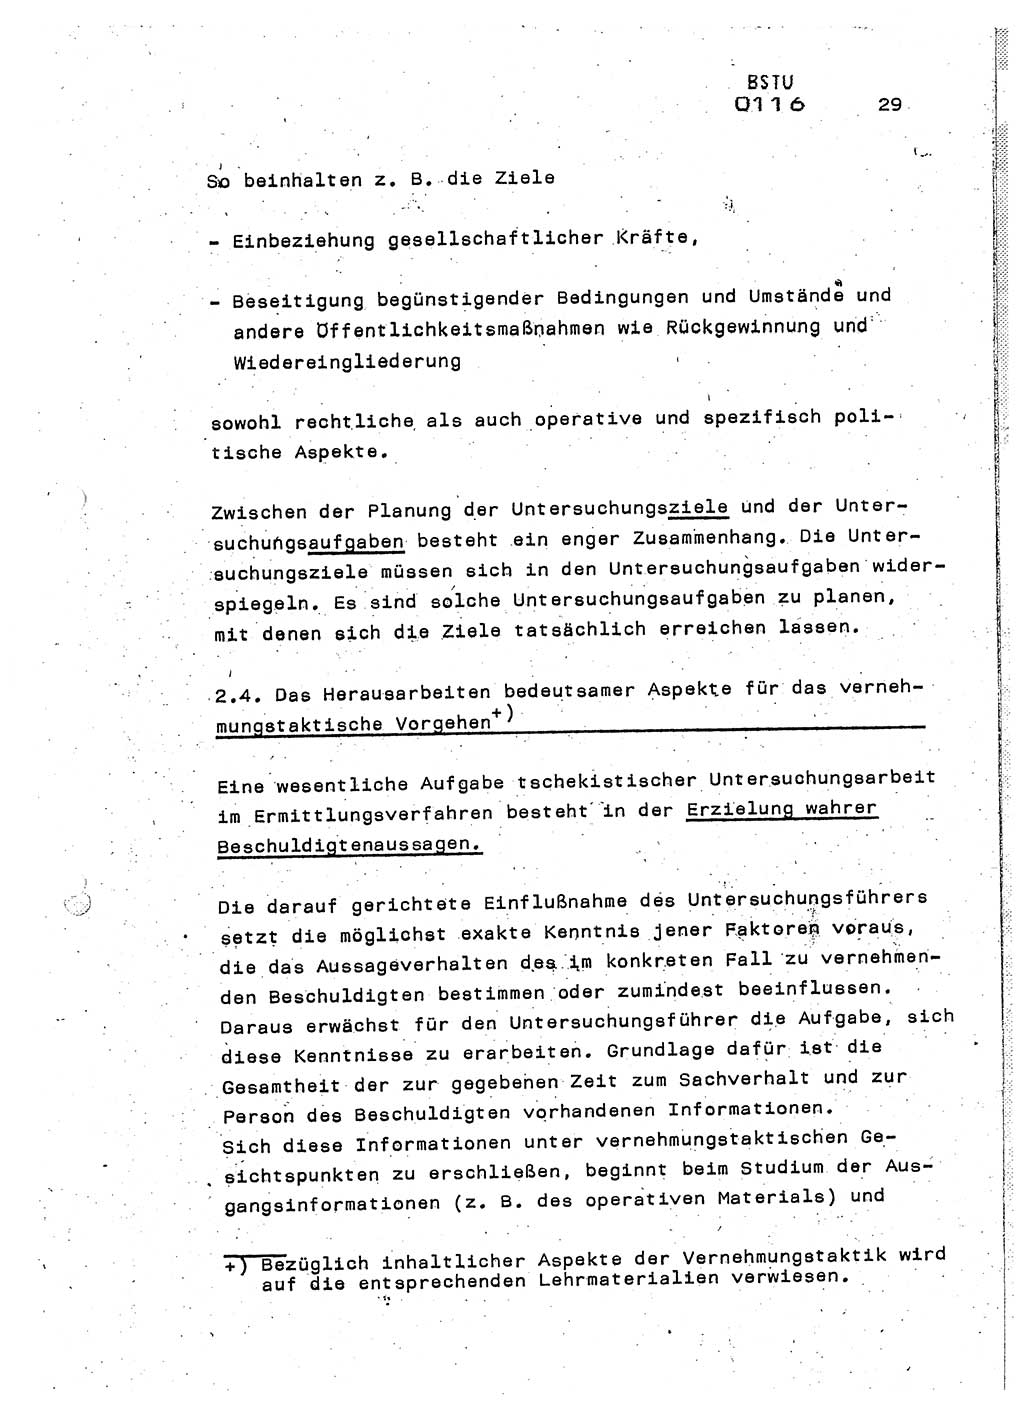 Lektion Ministerium für Staatssicherheit (MfS) [Deutsche Demokratische Republik (DDR)], Hauptabteilung (HA) Ⅸ, Berlin 1987, Seite 29 (Lekt. Pln. Bearb. EV MfS DDR HA Ⅸ /87 1987, S. 29)